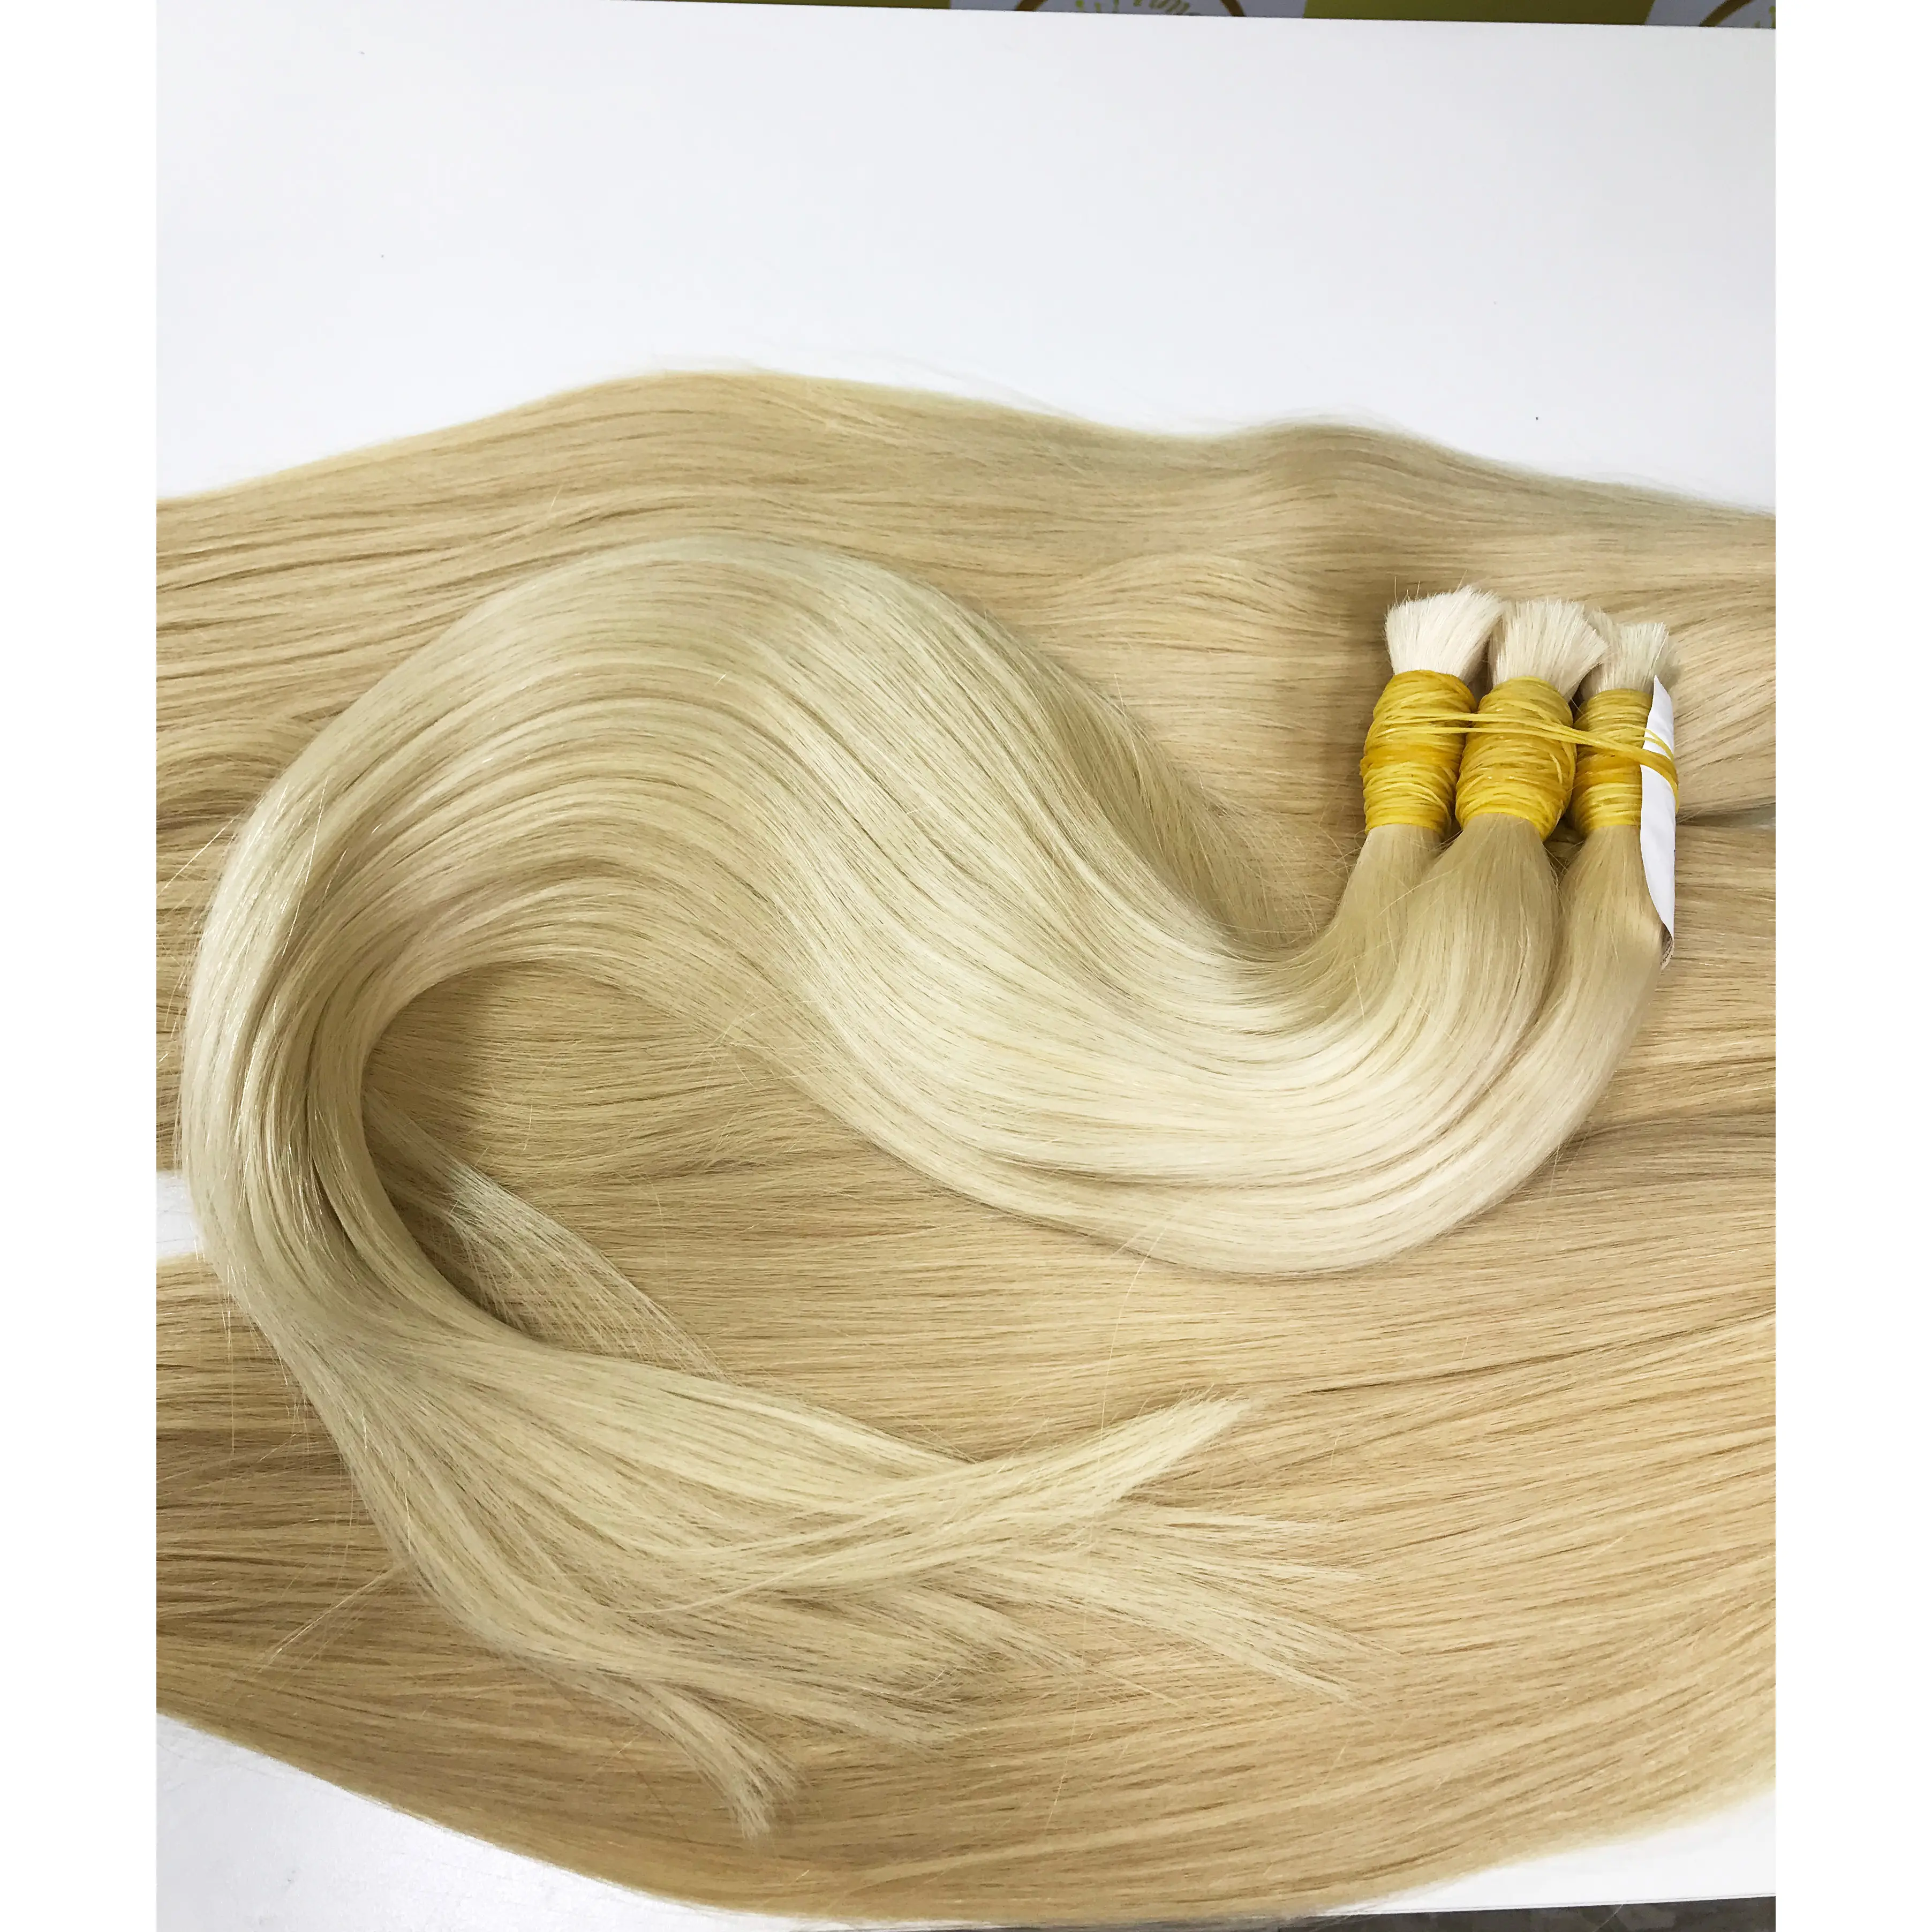 100% 단일 기증자 헤어 익스텐션에서 만든 금발 베트남 머리 최고 품질 최고 등급 도매 가격 러시아 유럽 머리